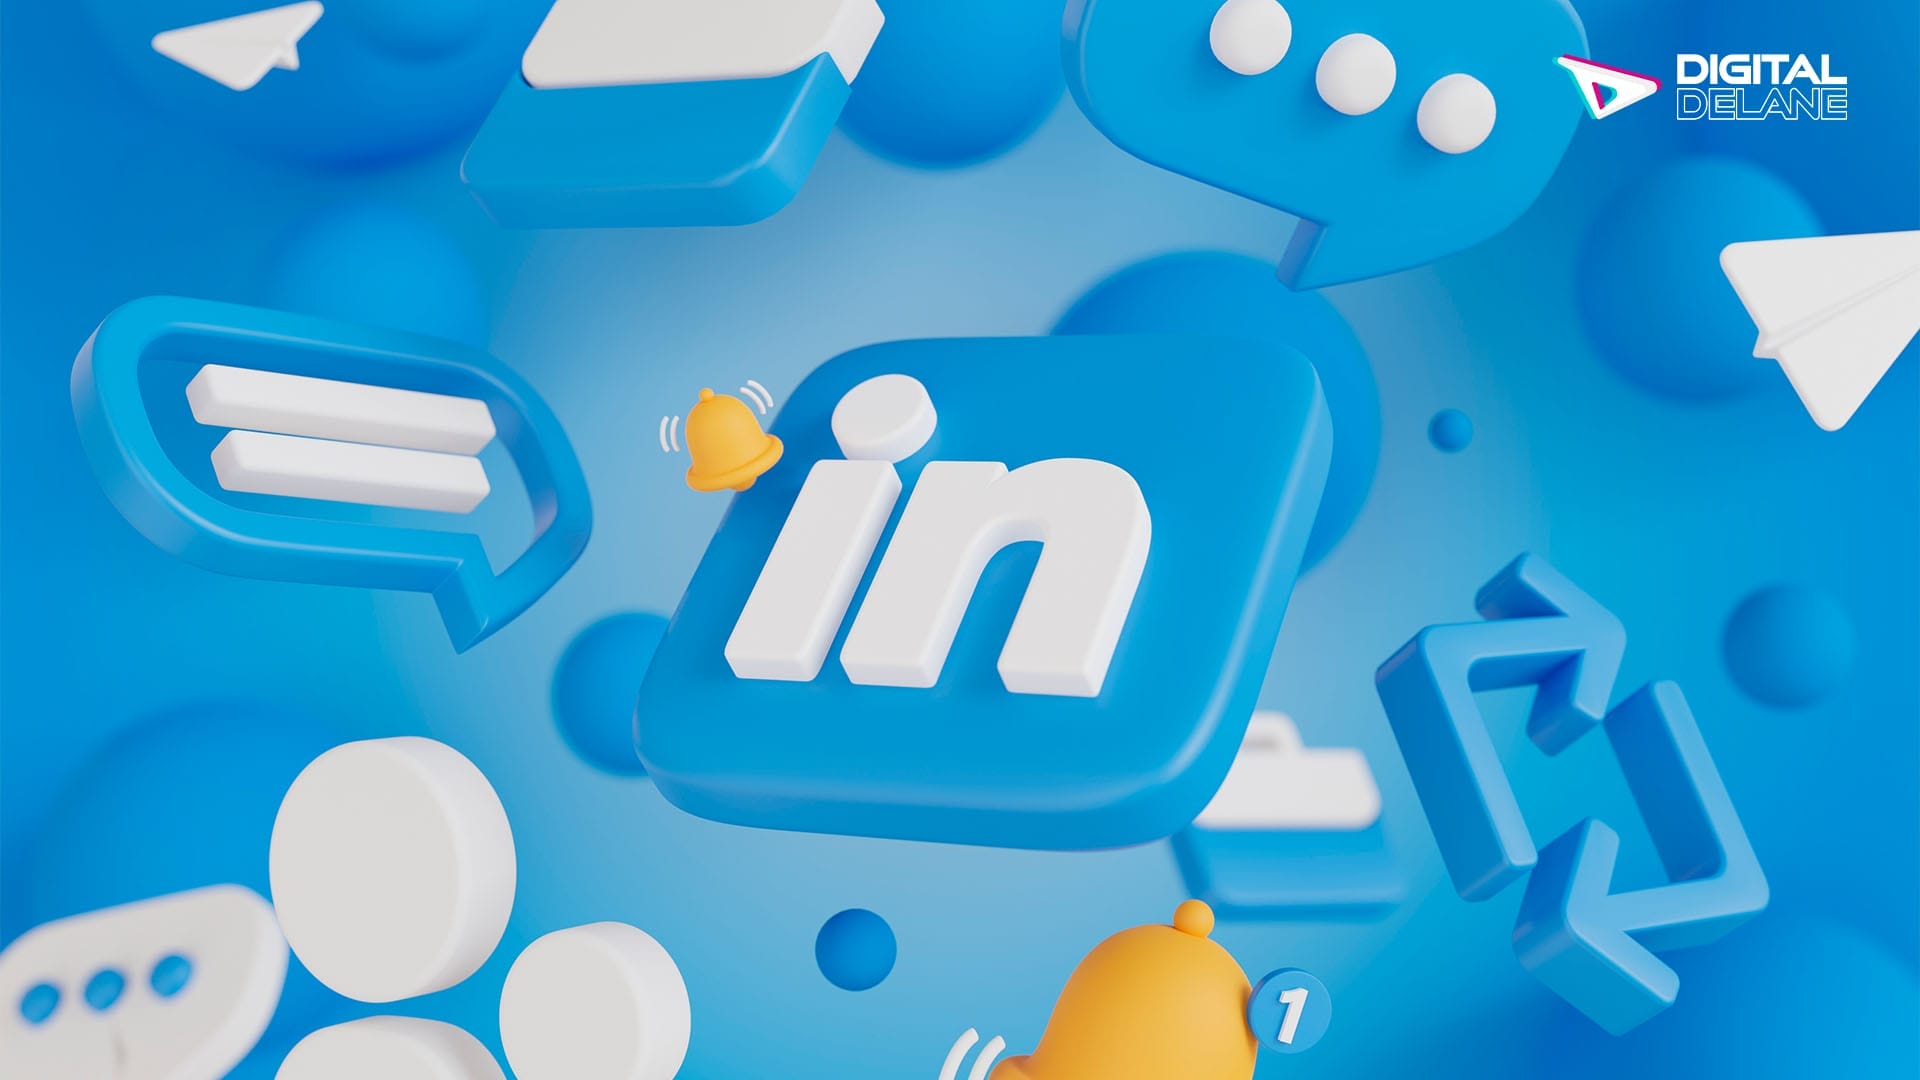 Leveraging LinkedIn for Professional Branding